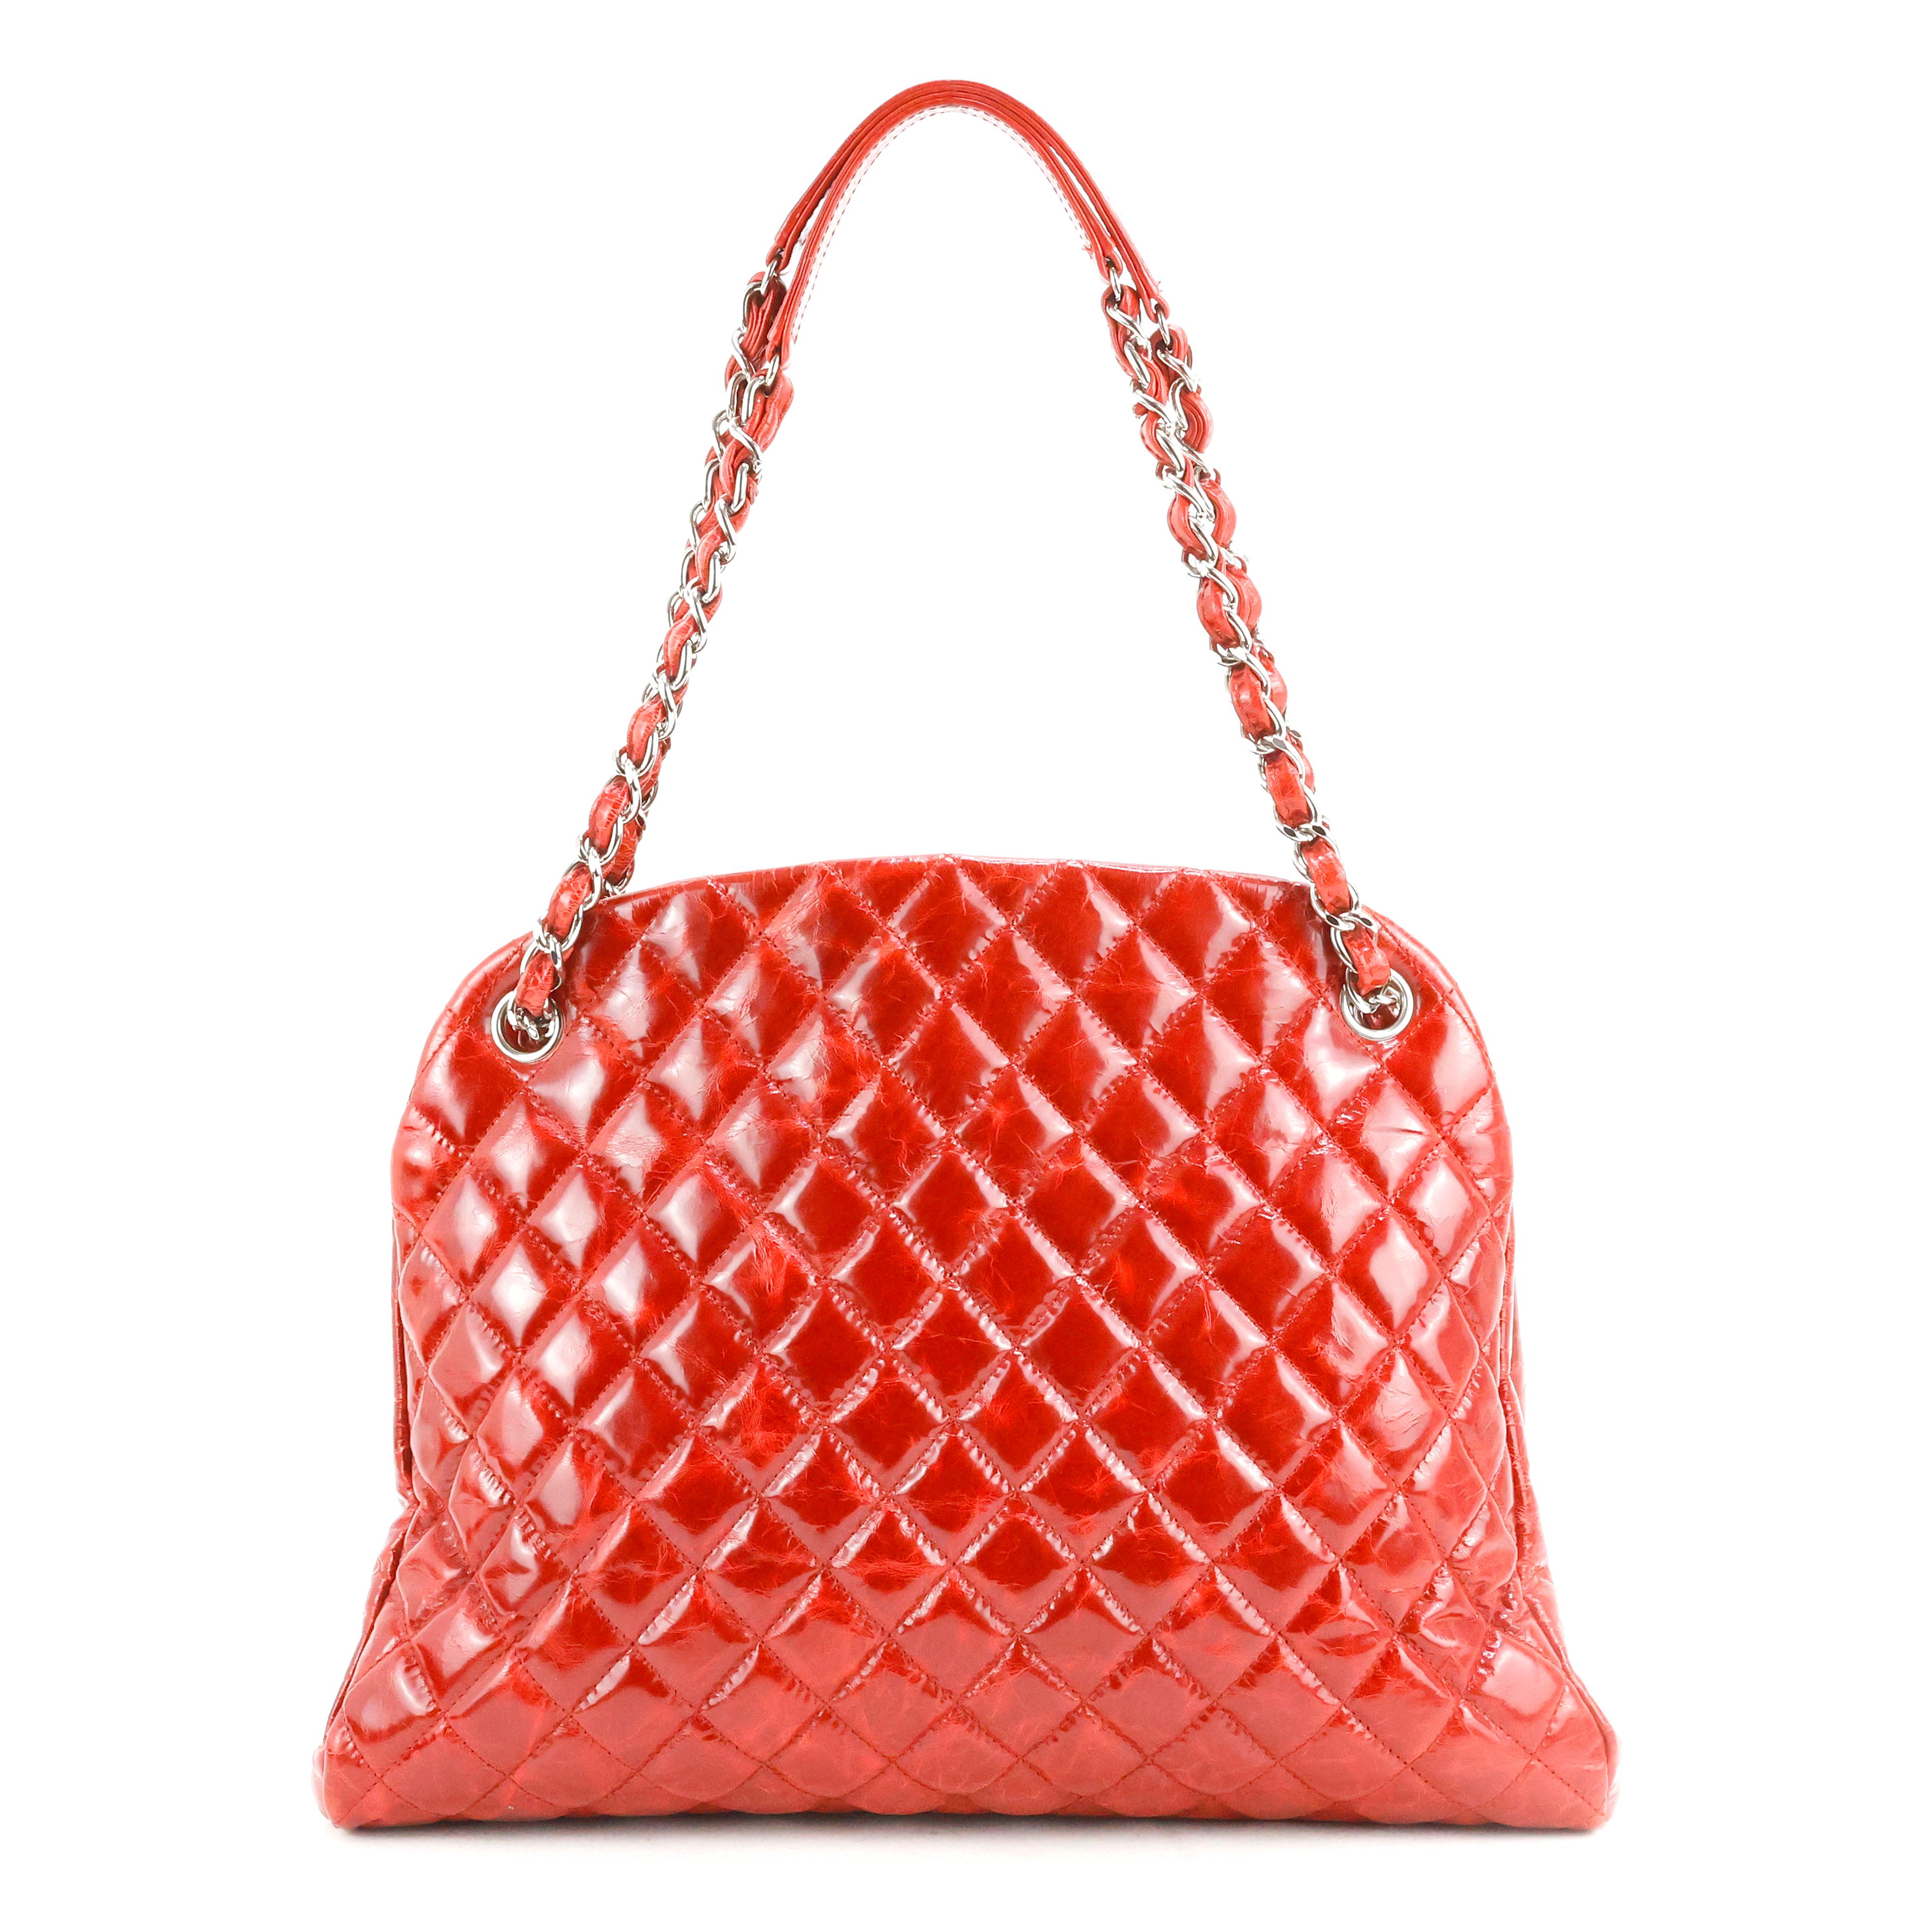 Chanel Tasche - Chanel Mademoiselle Tasche aus gestepptem Leder, Farbe Rot, silberne Beschläge.

Bedingung:
Ausgezeichnet.

Verpackung/Zubehör:
Staubbeutel.

Abmessungen:
33cm x 26cm x 12cm